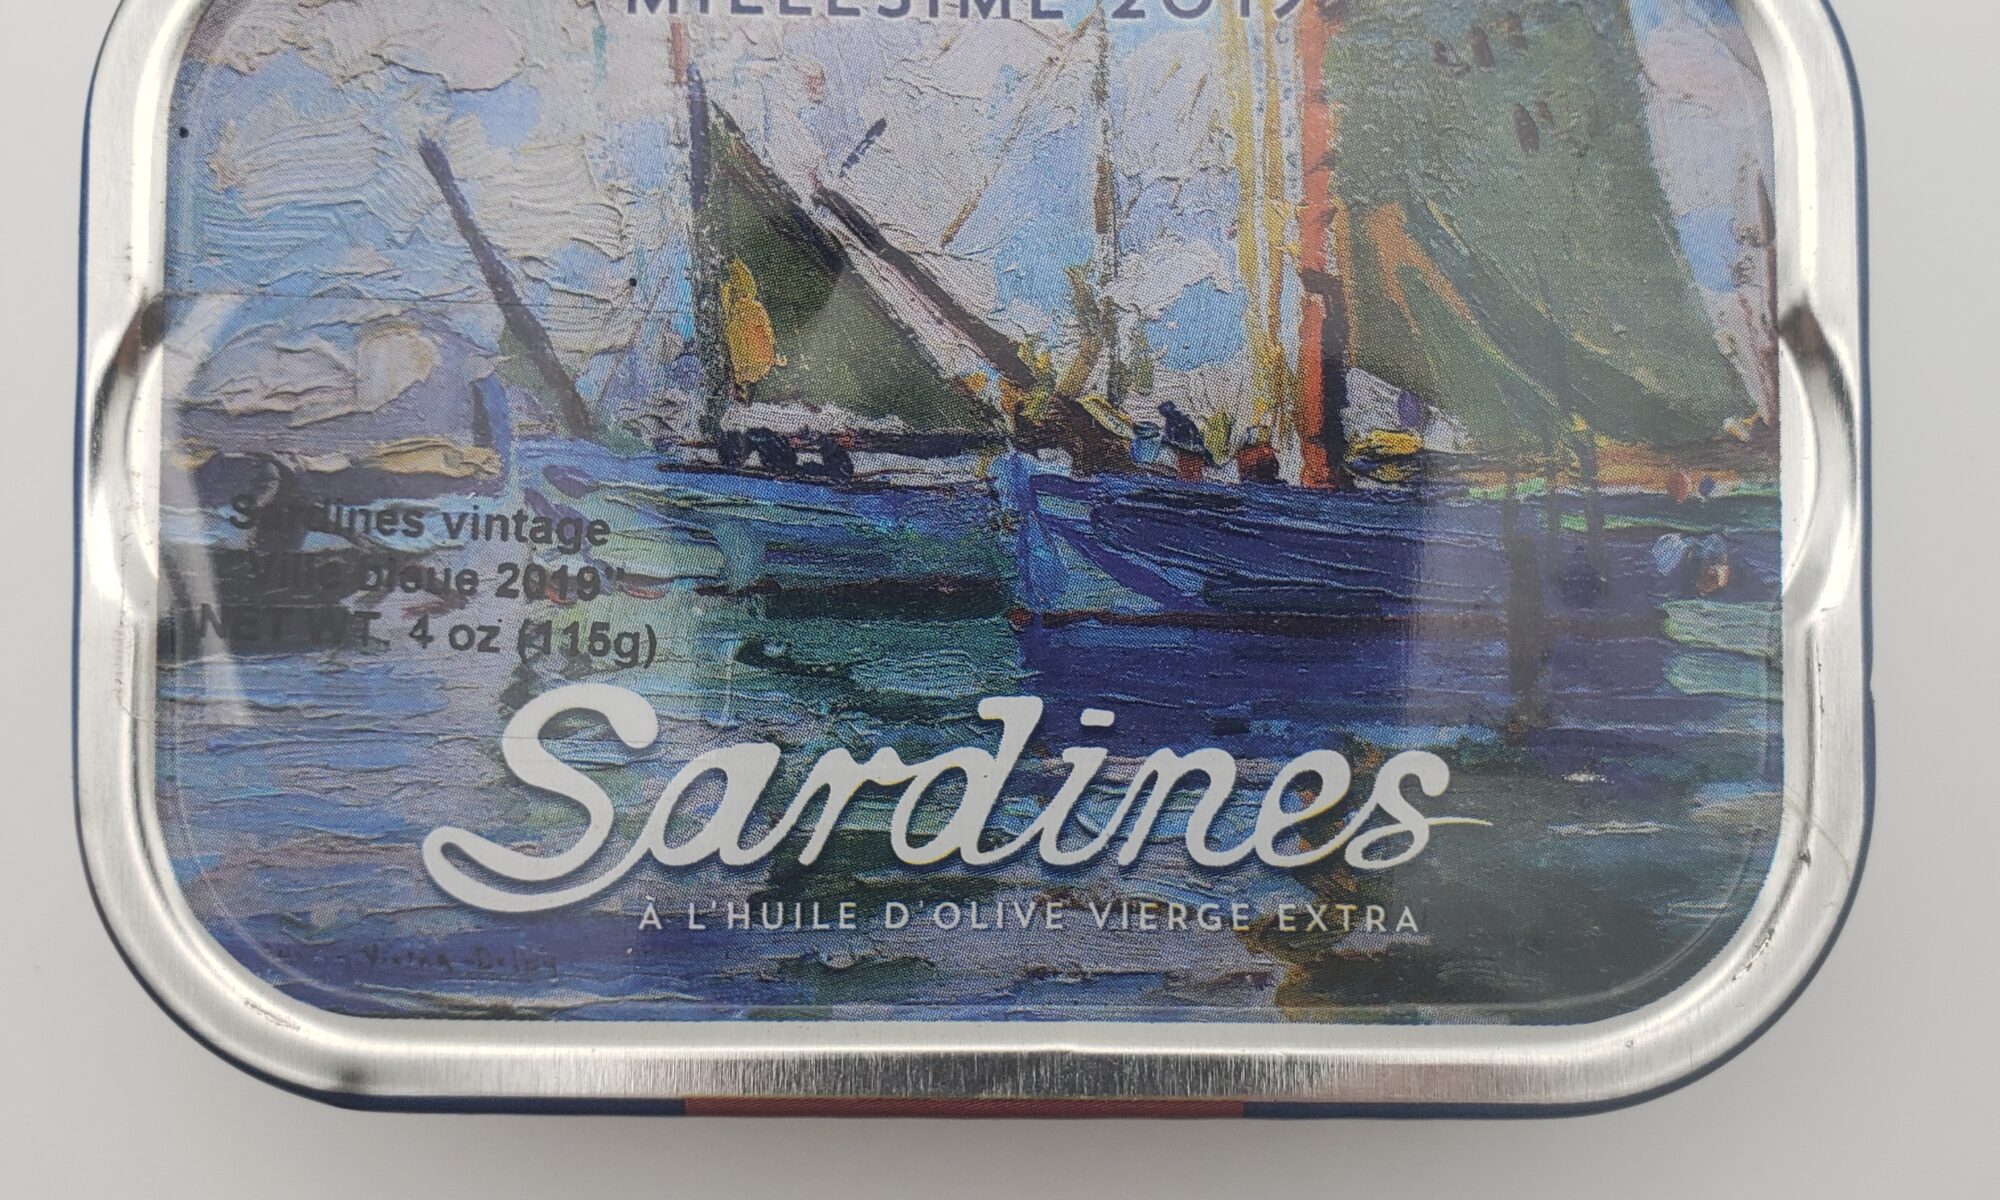 Image of Mouettes d'arvor vintage sardines millesine 2019